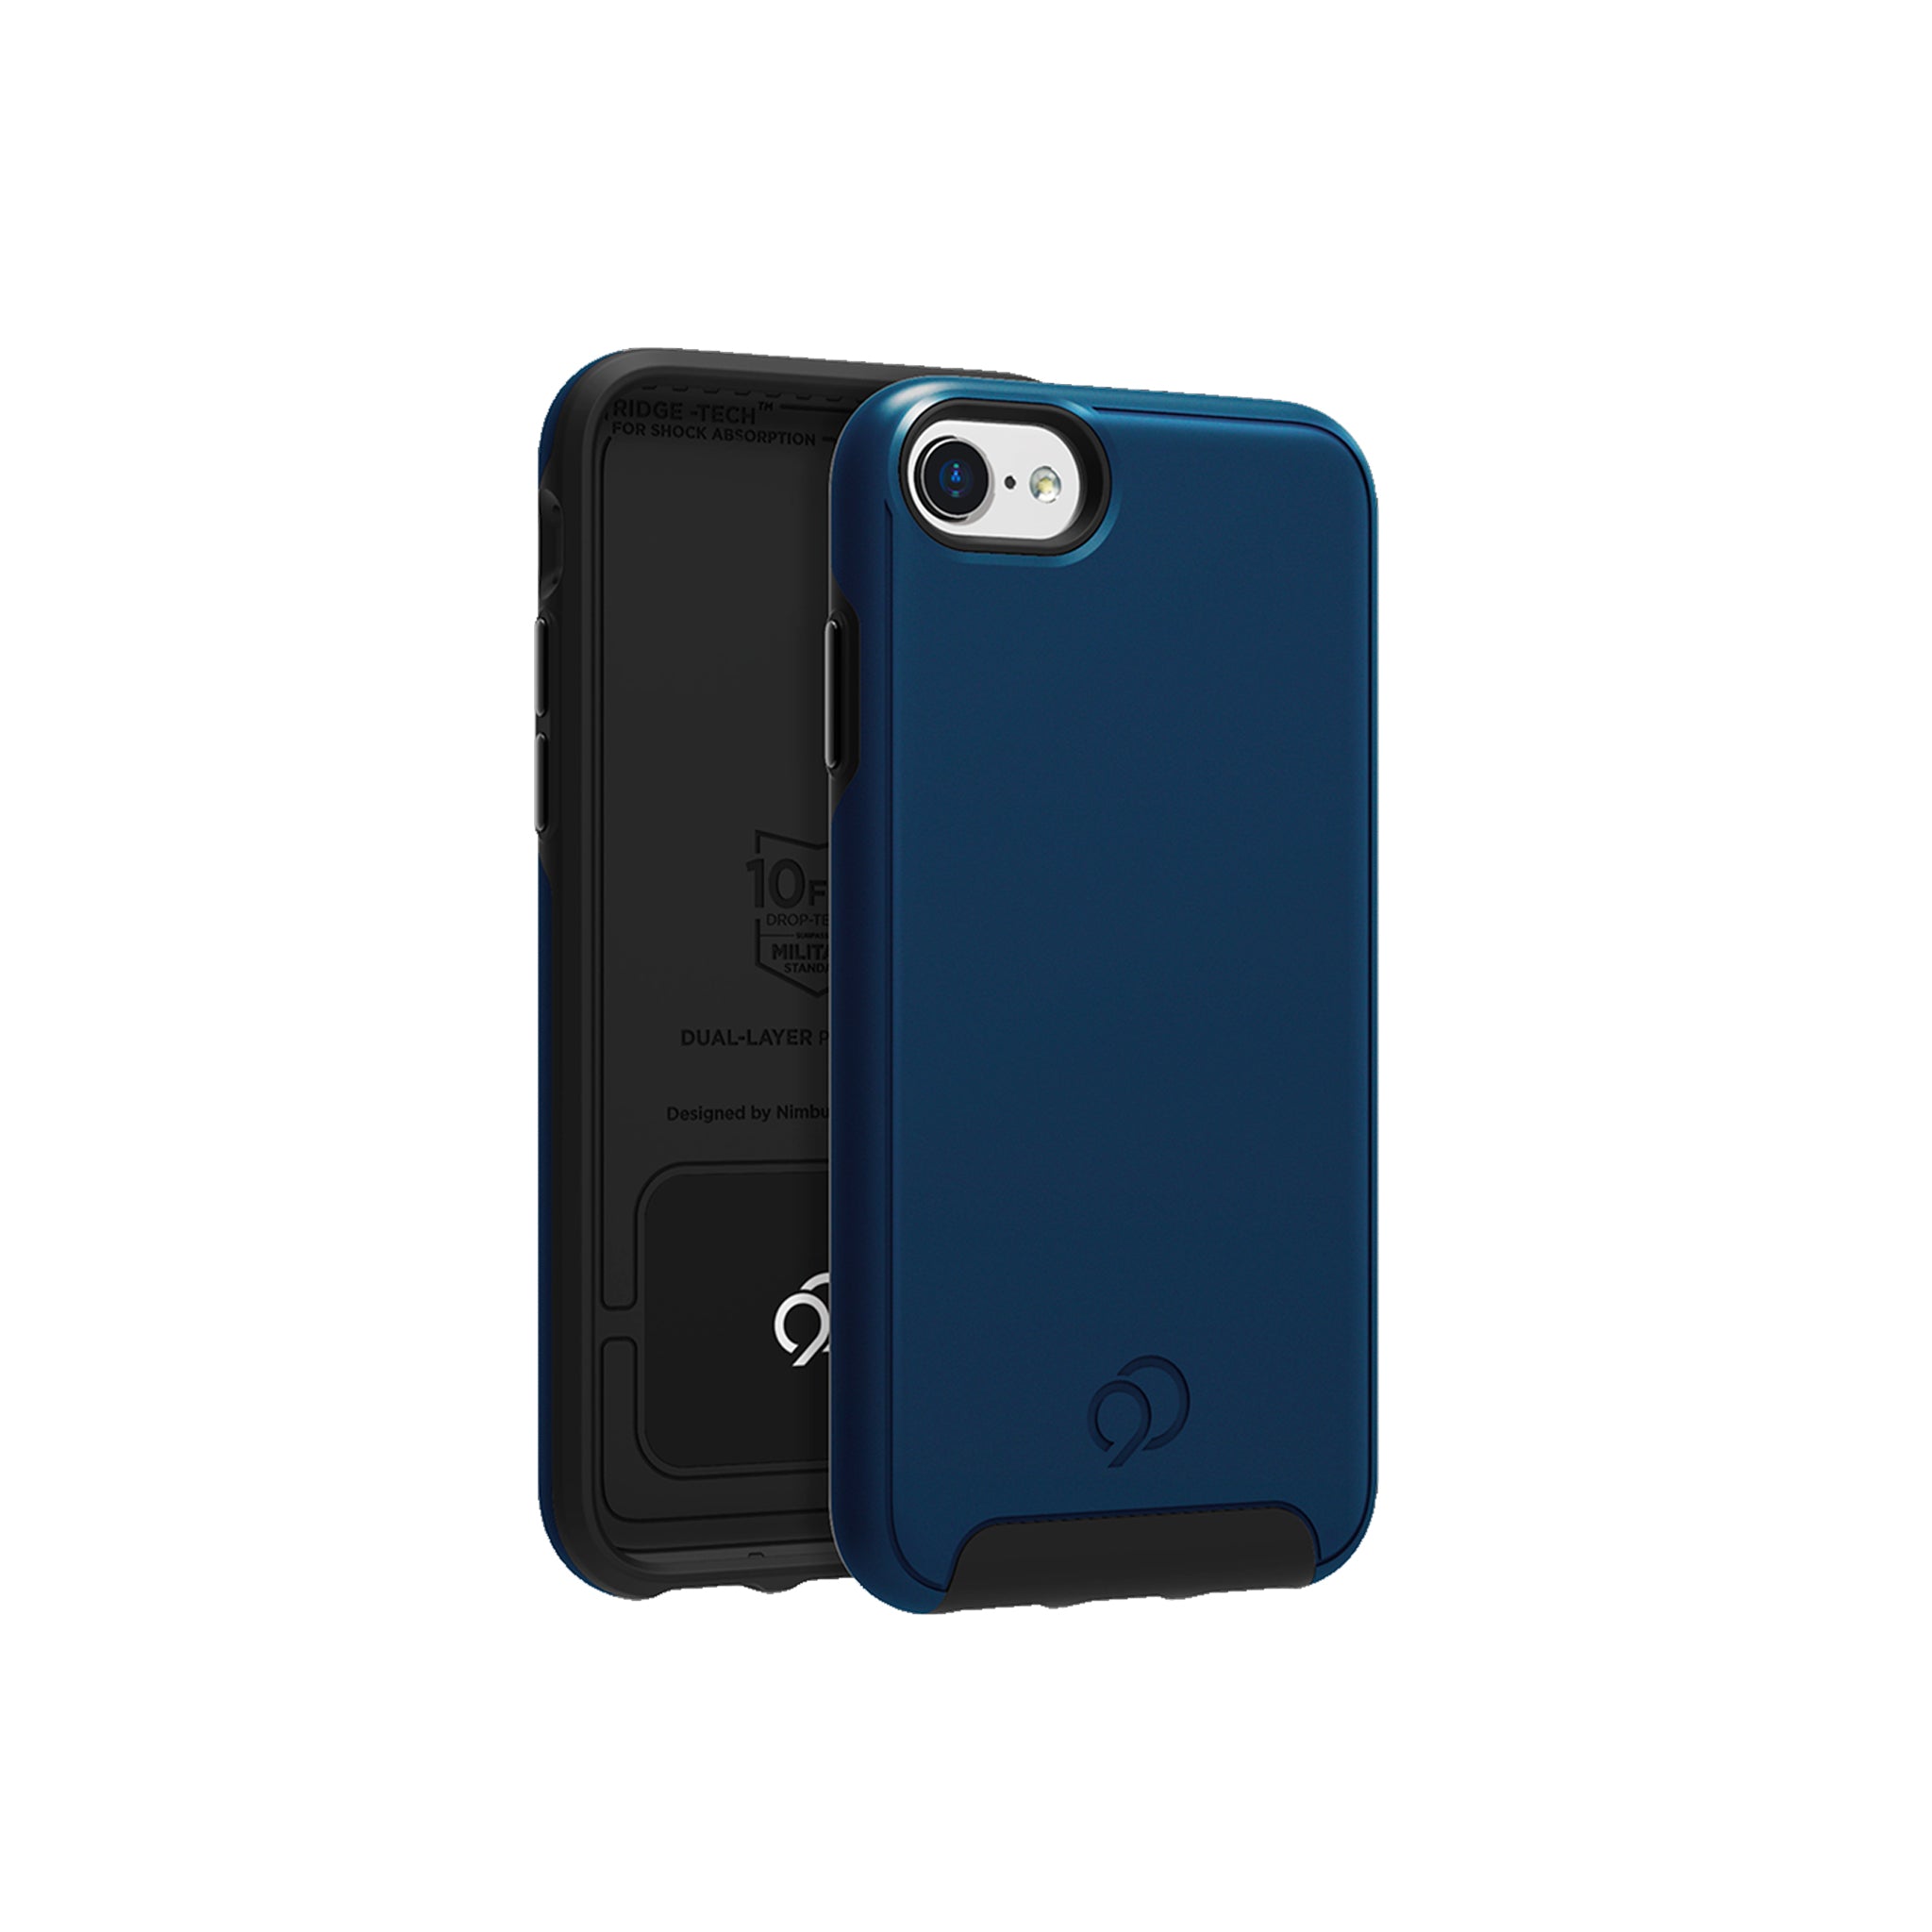 Nimbus9 - Cirrus 2 Case For Apple Iphone Se / 8 / 7 / 6s / 6 - Midnight Blue